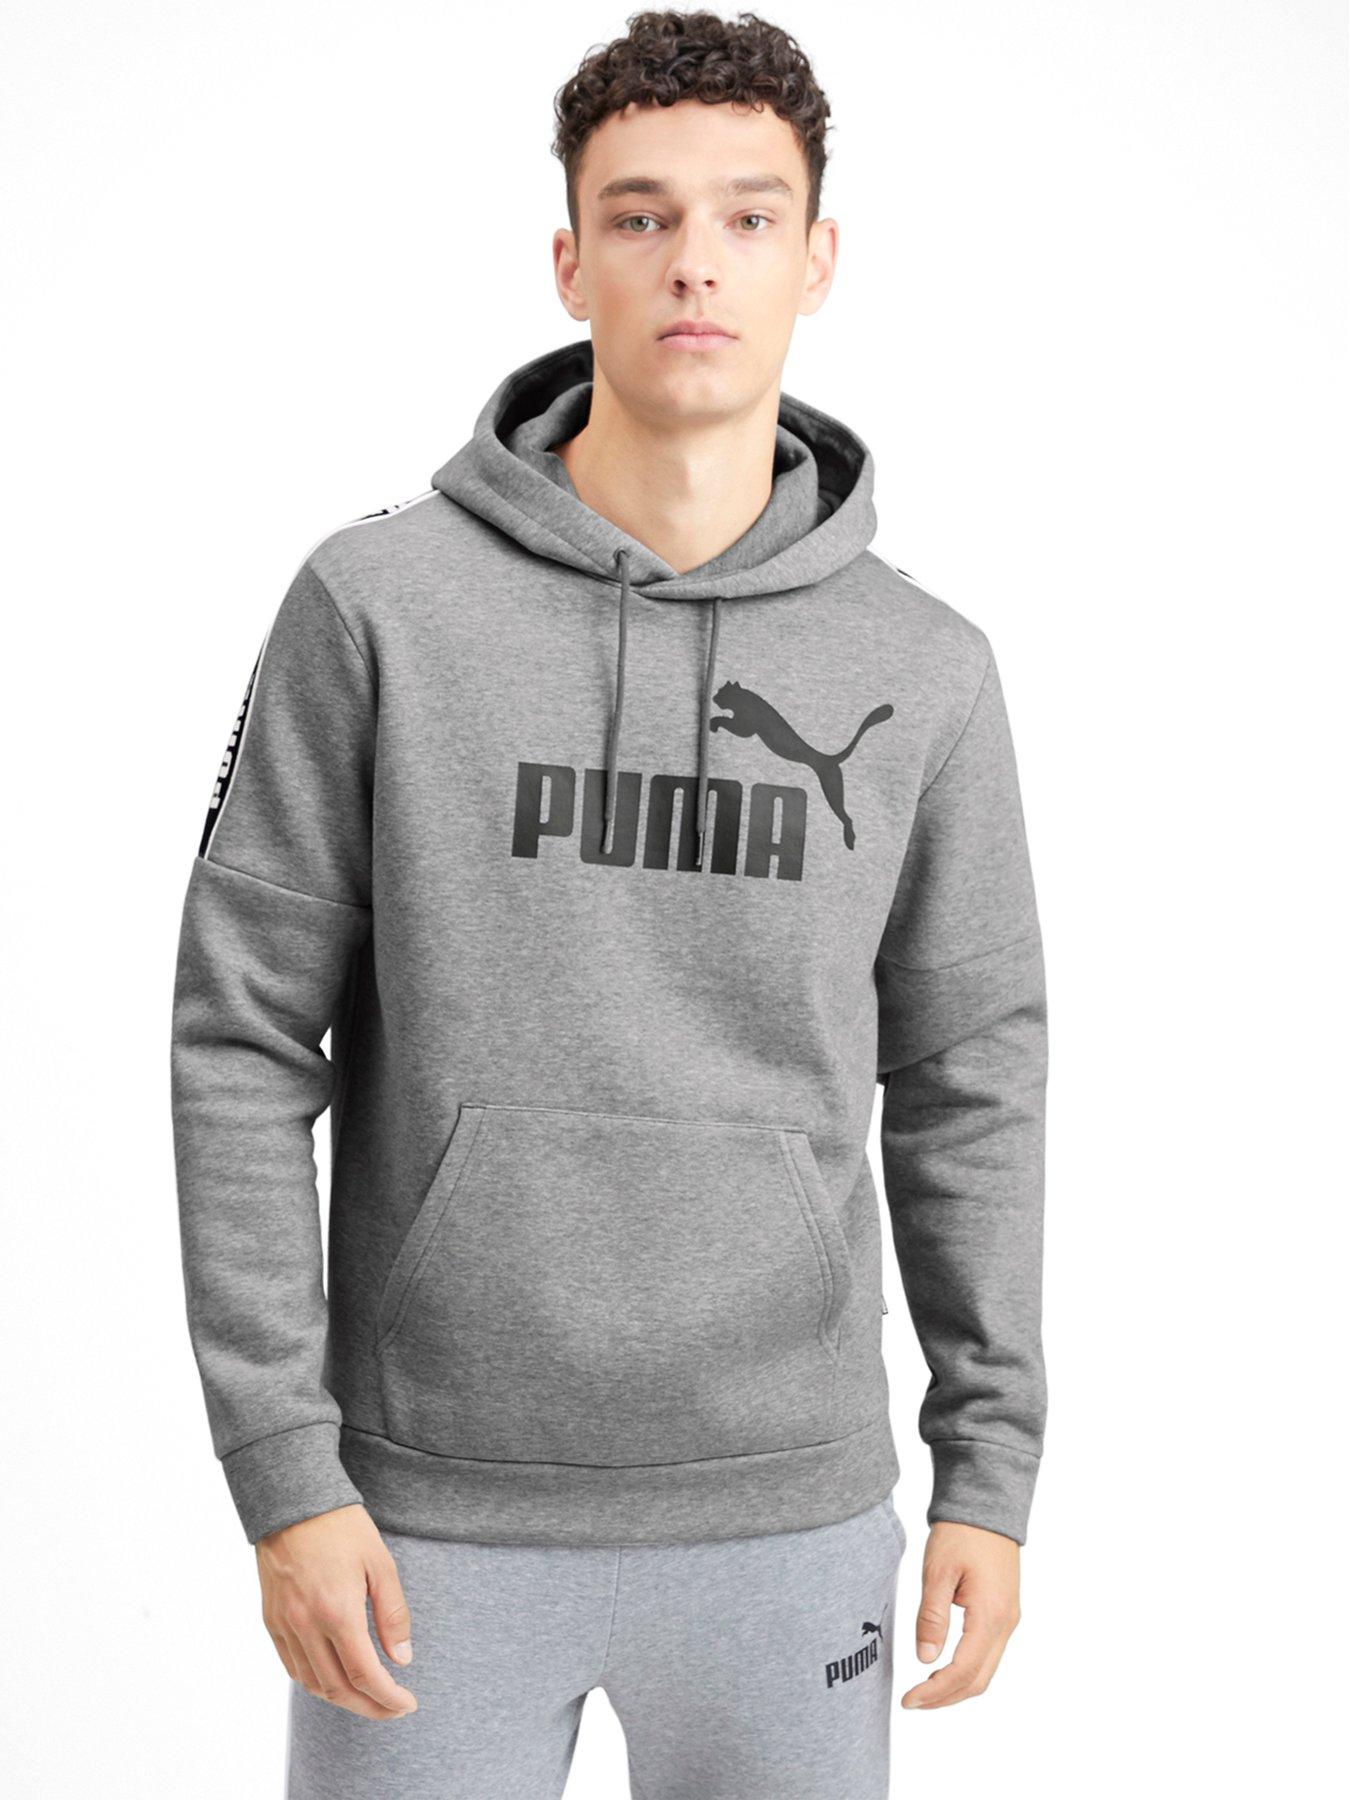 puma hoodie mens grey